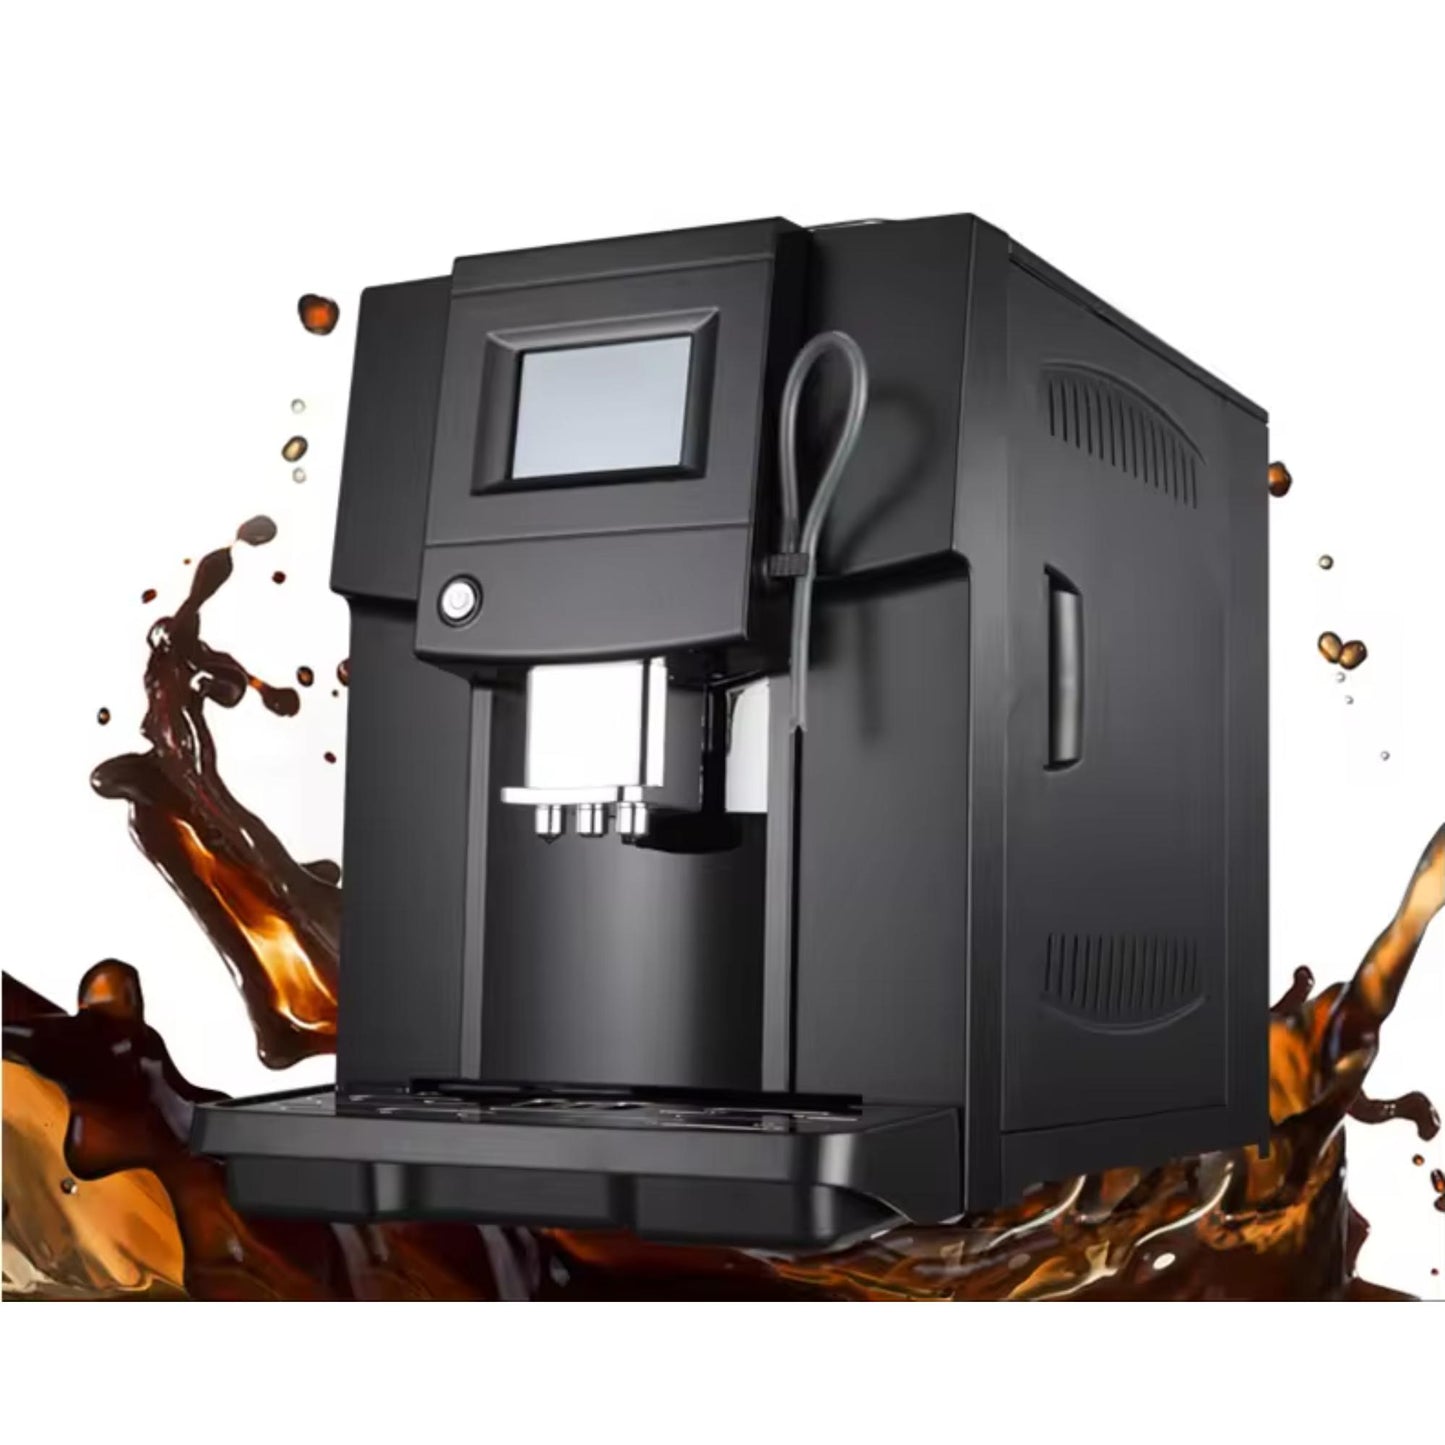 Colet Q006 Automatische Kaffeemaschine: Bequemes One-Touch-Kaffeebrühgerät. | Blue Chilli Electronics.